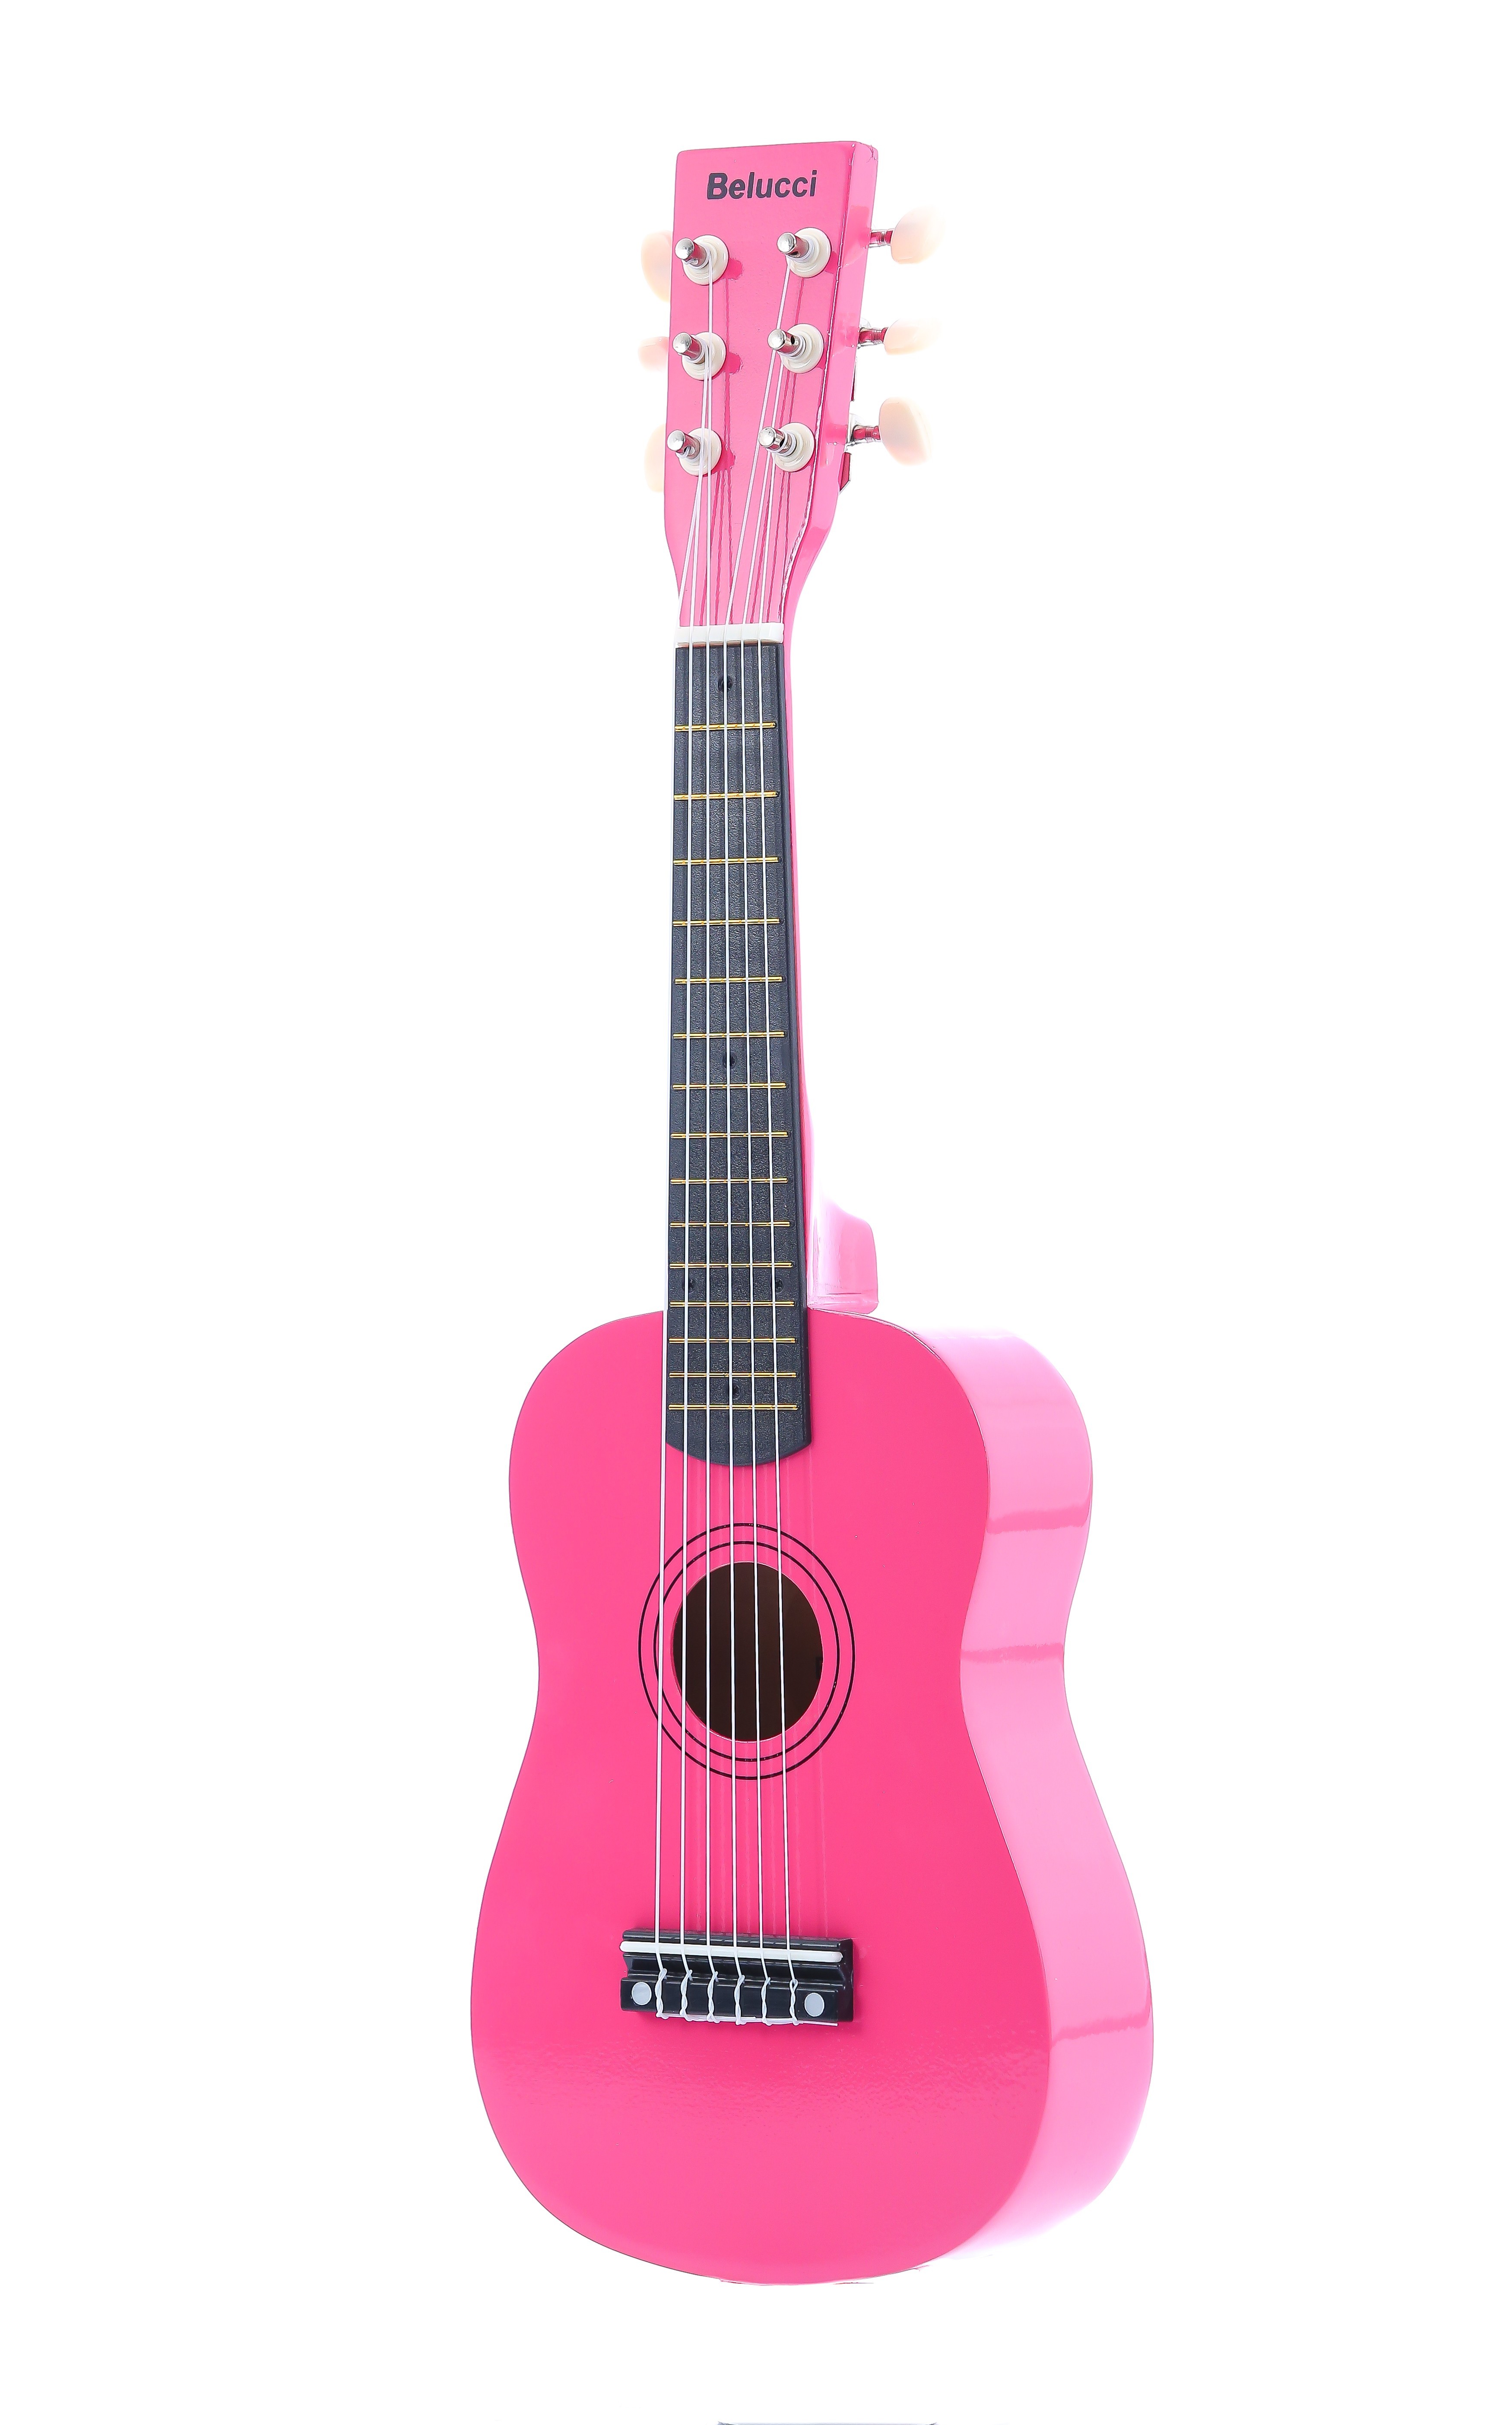 Детальная картинка товара Belucci XU23-21 Rose Pink в магазине Музыкальная Тема